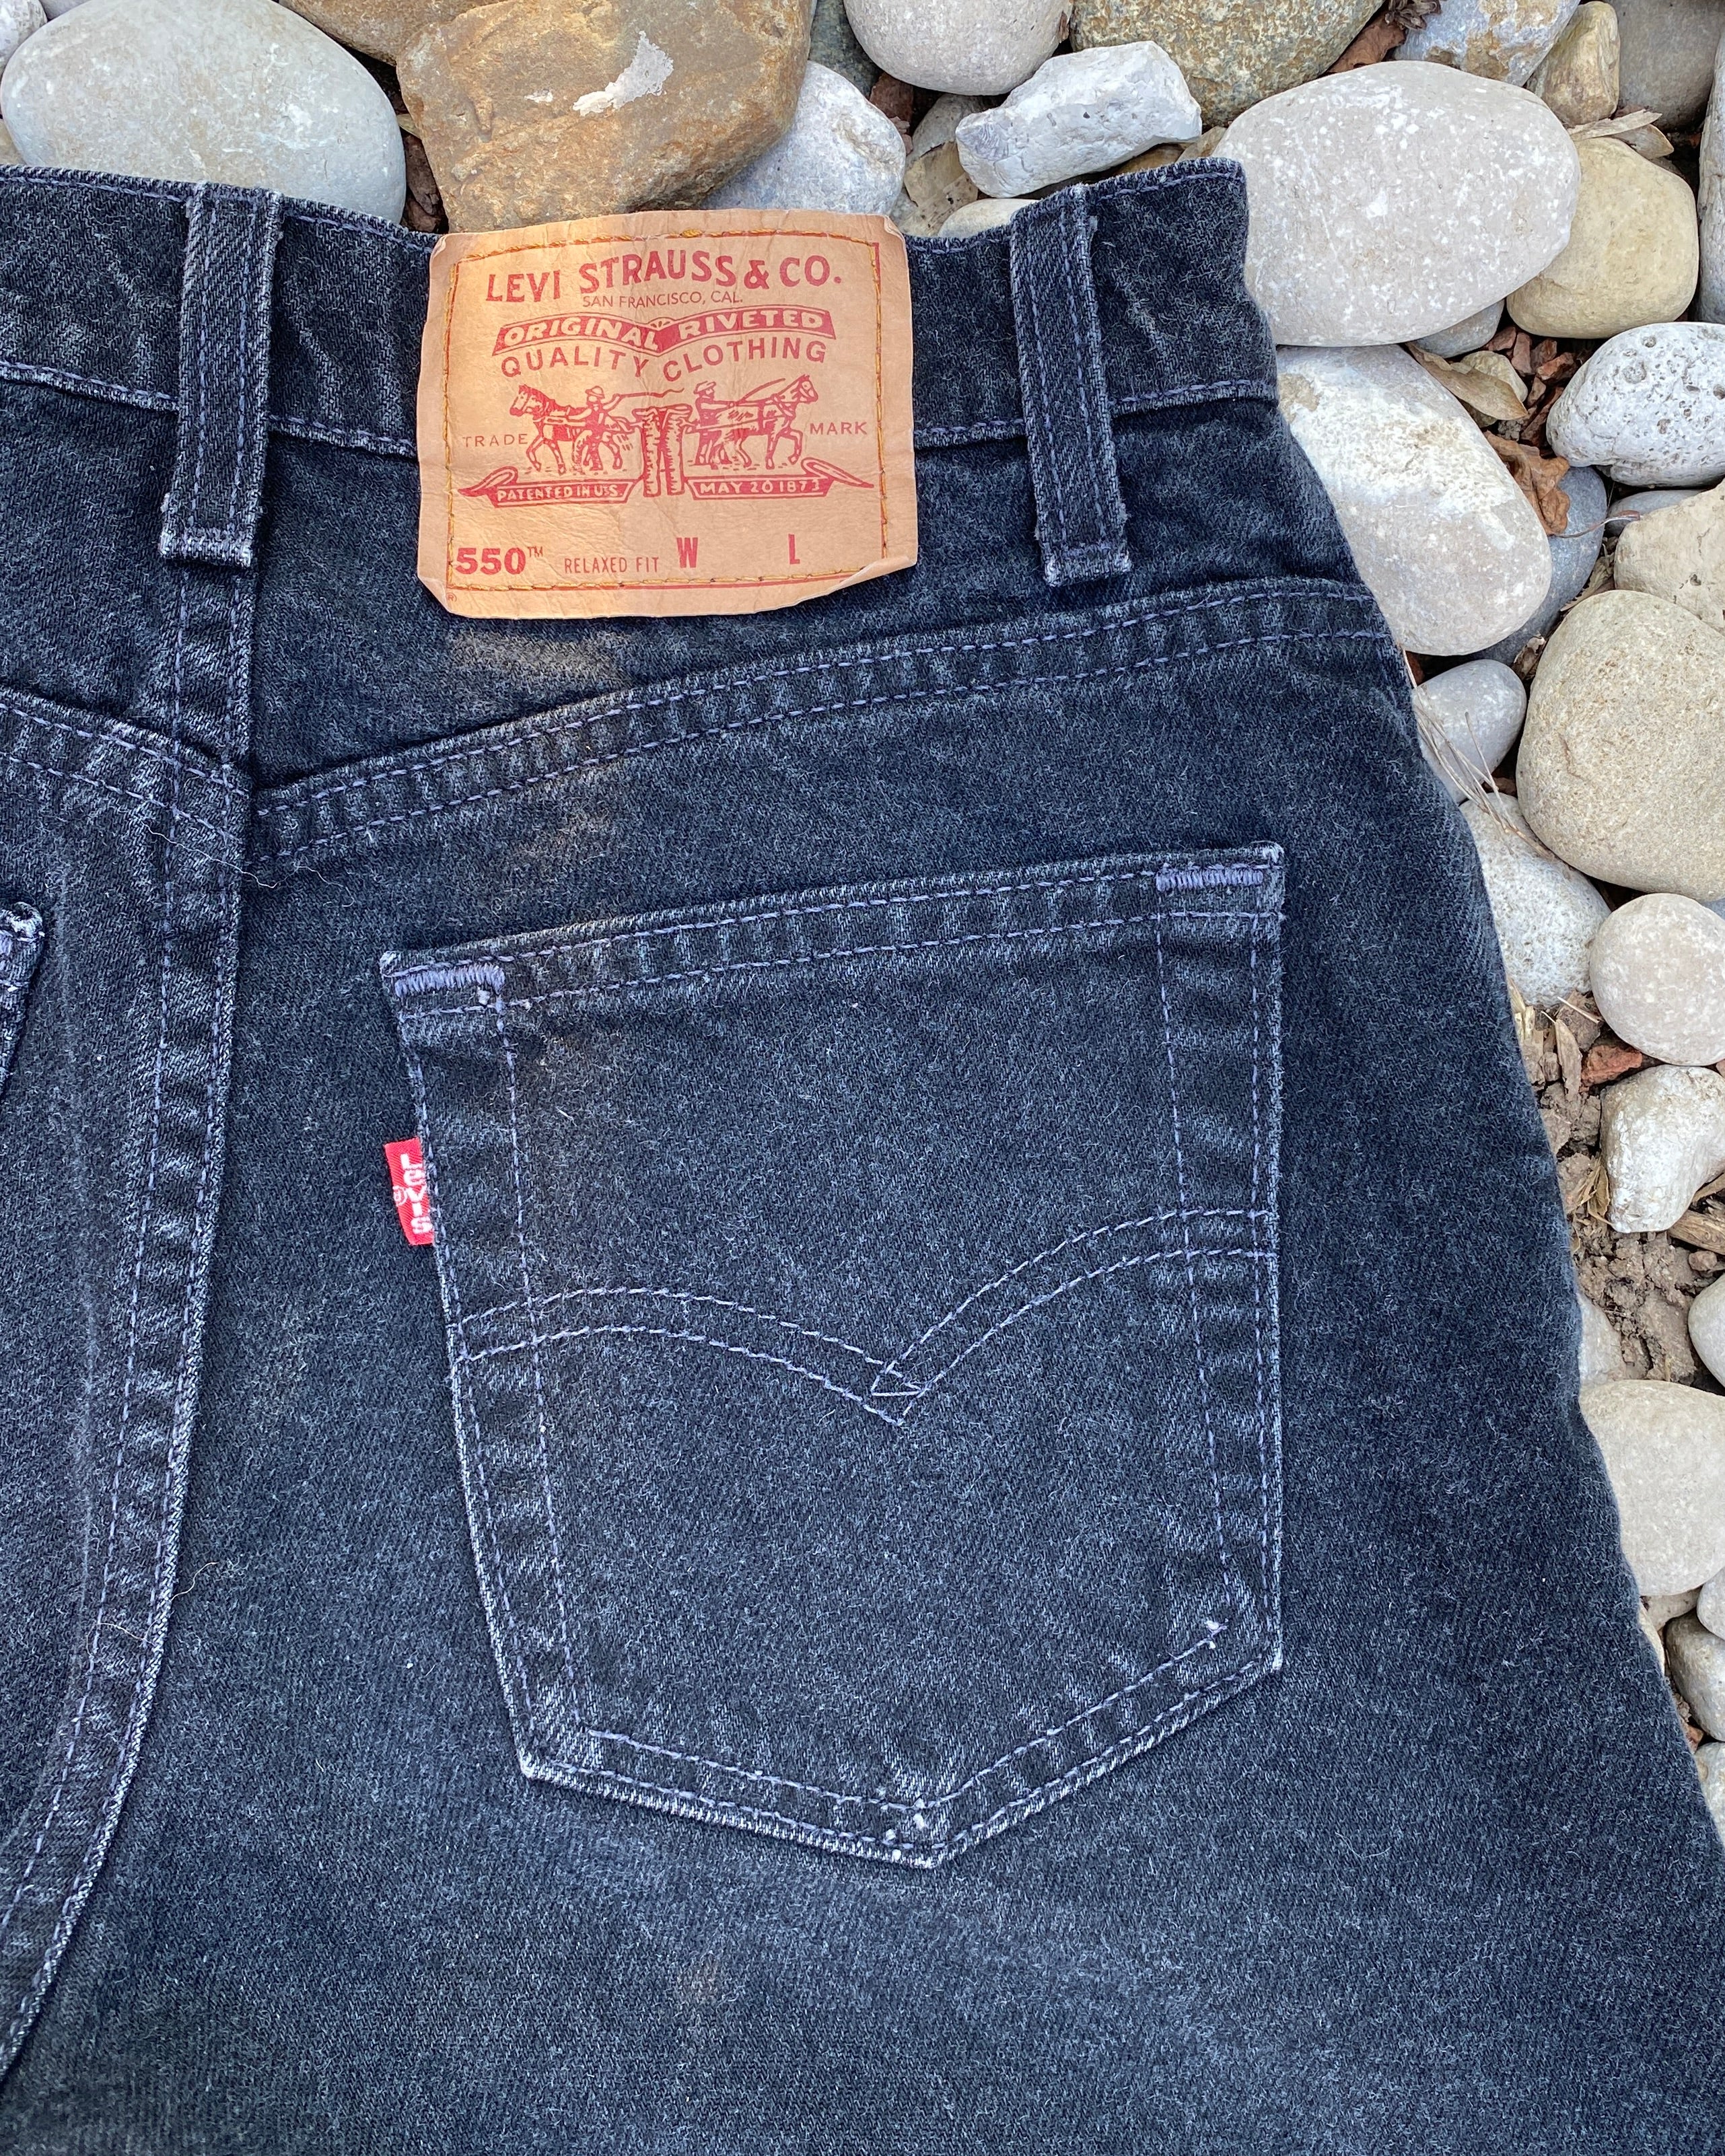 Vintage 1990s Levis 550 Black Wash Denim High Waist Jean Shorts Made in USA size 27